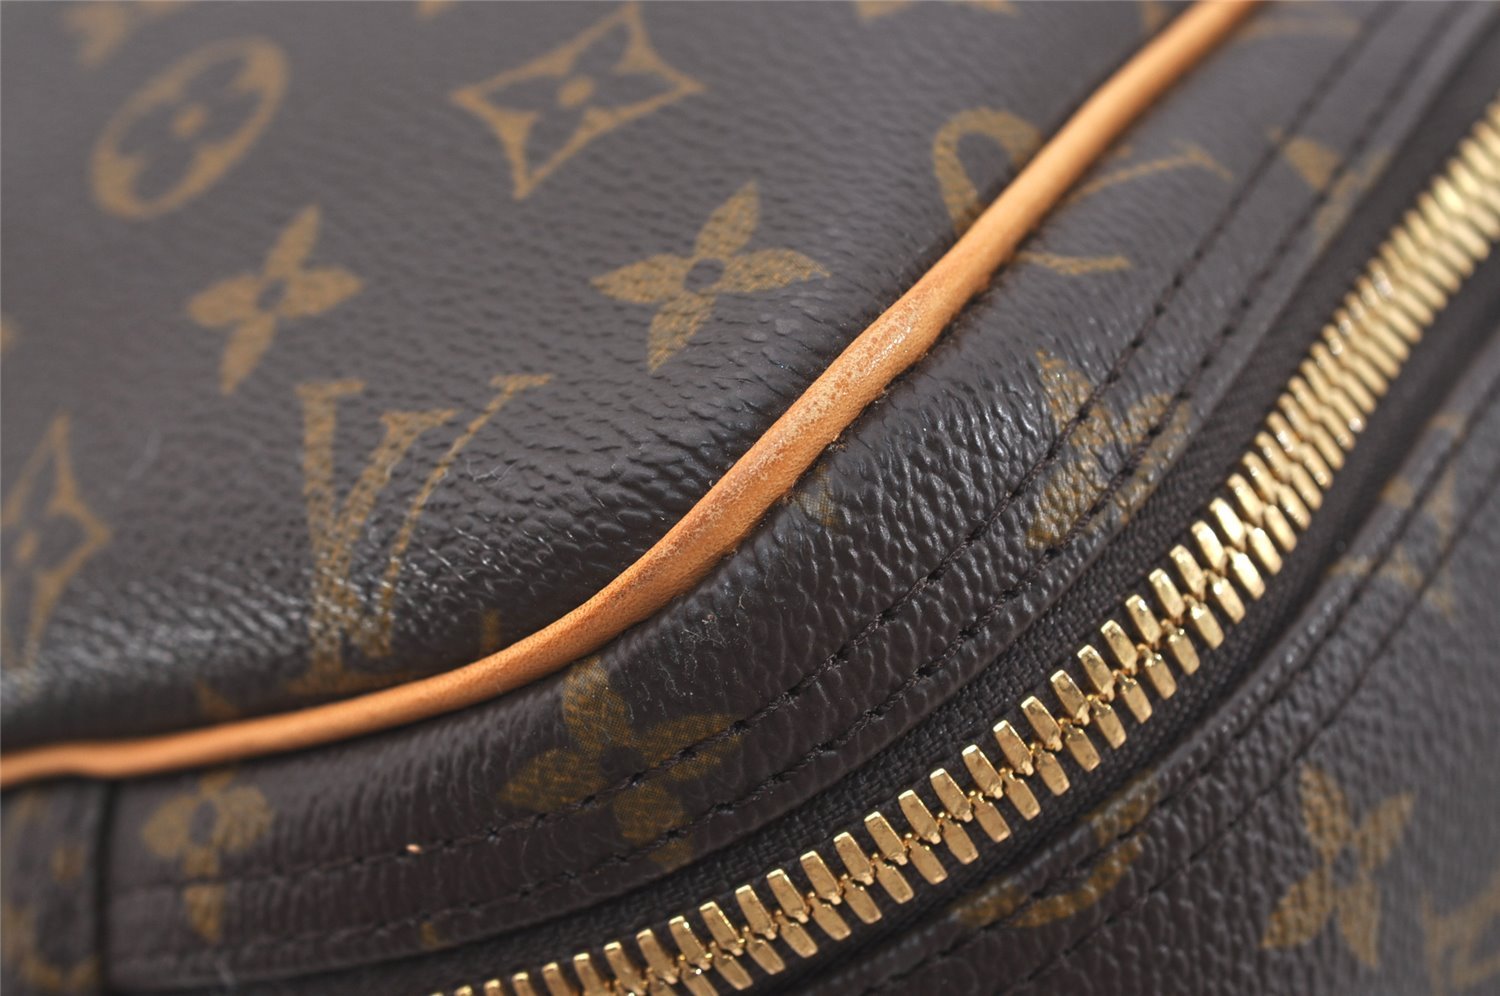 Authentic Louis Vuitton Monogram Alize 2 Poches 2 Way Travel Bag M41392 LV 4559J